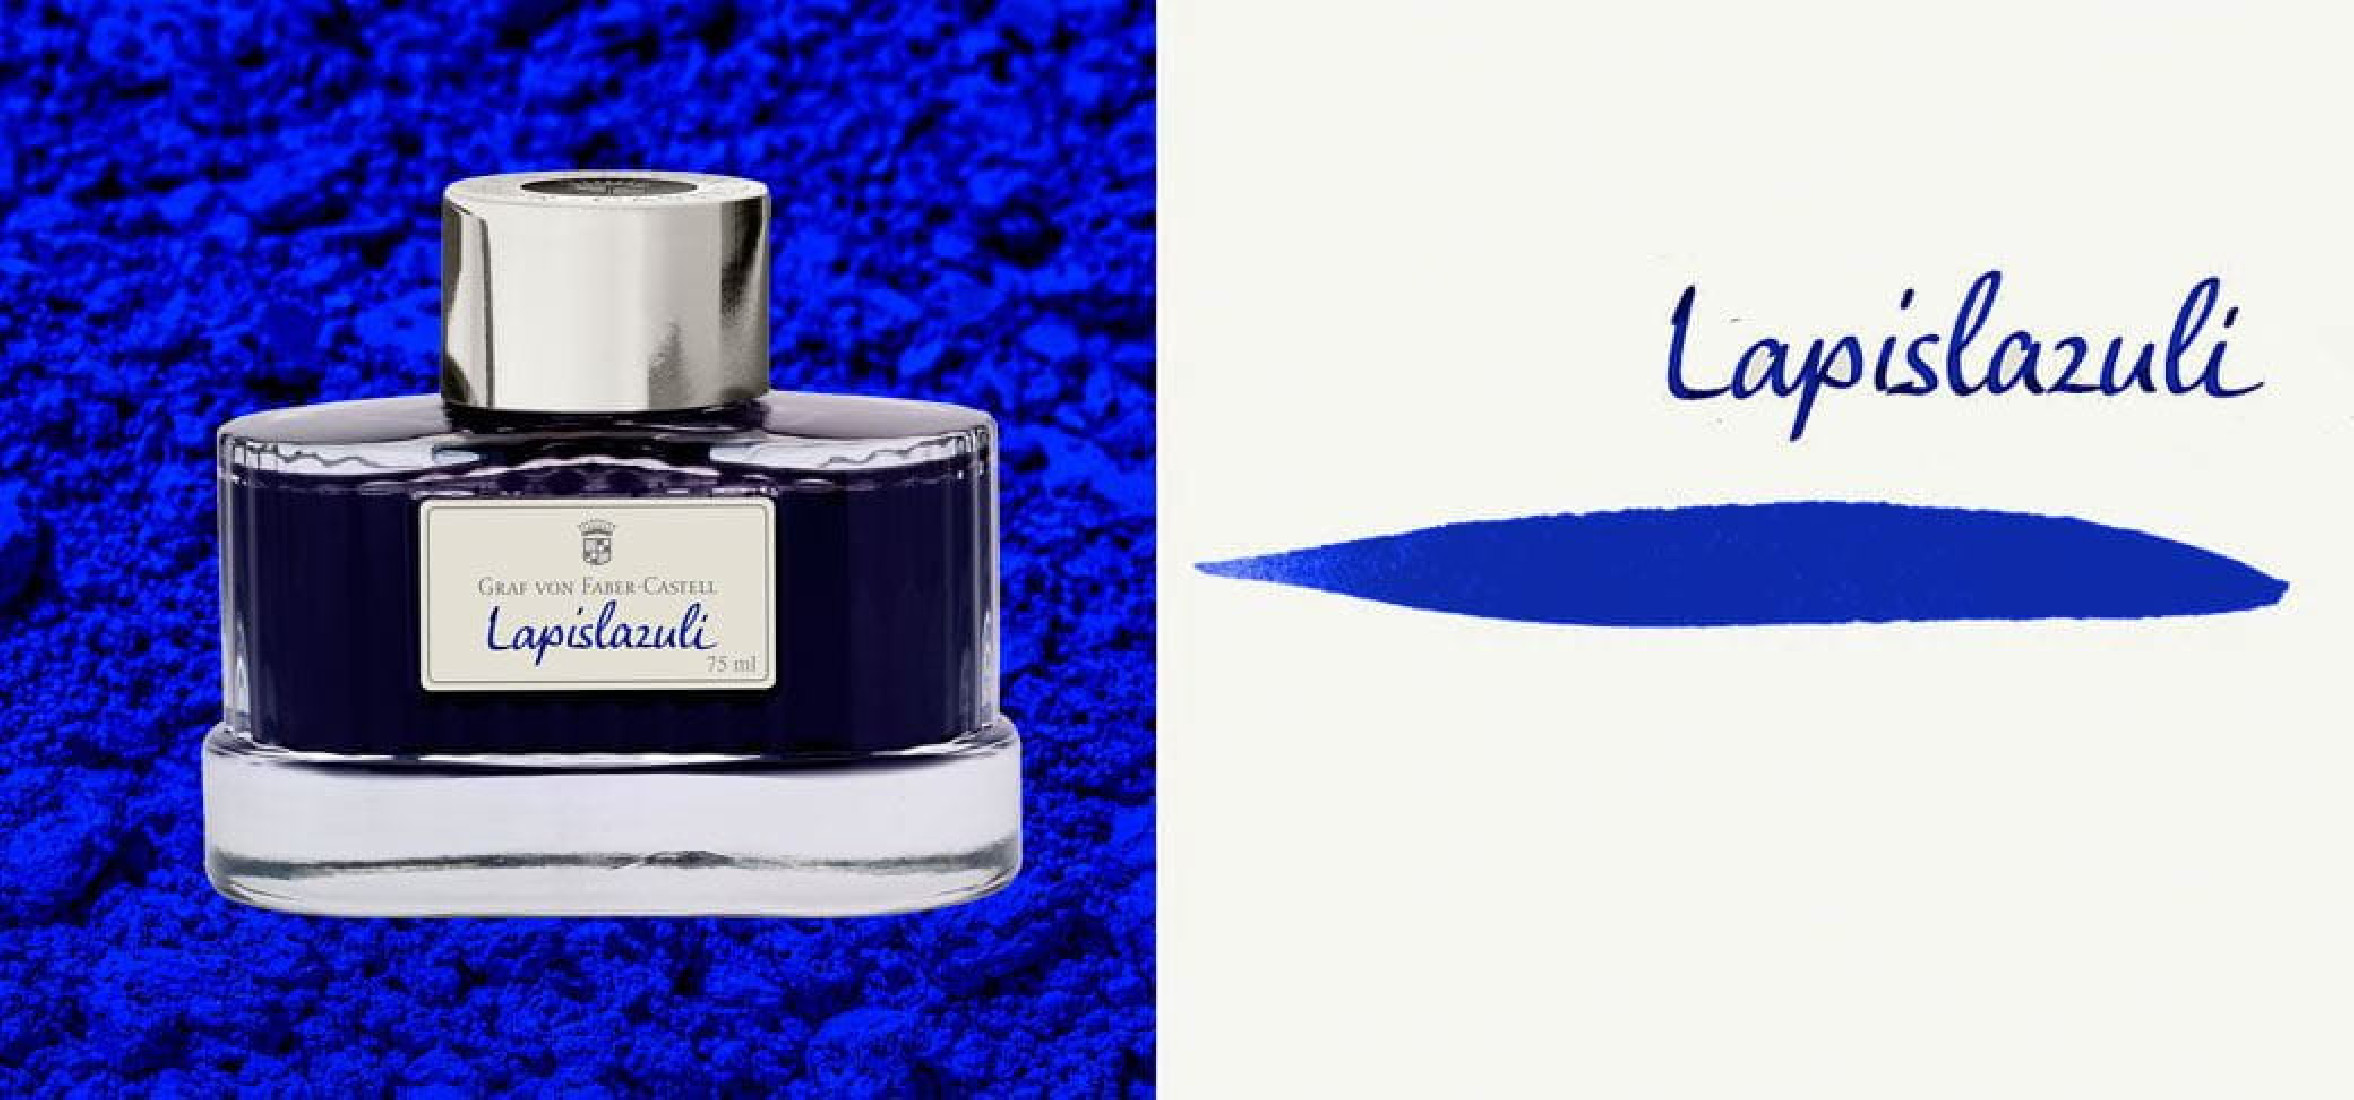 Graf von Faber-Castell Lapis Lazuli 141023 Fountain Pen Ink 75ml